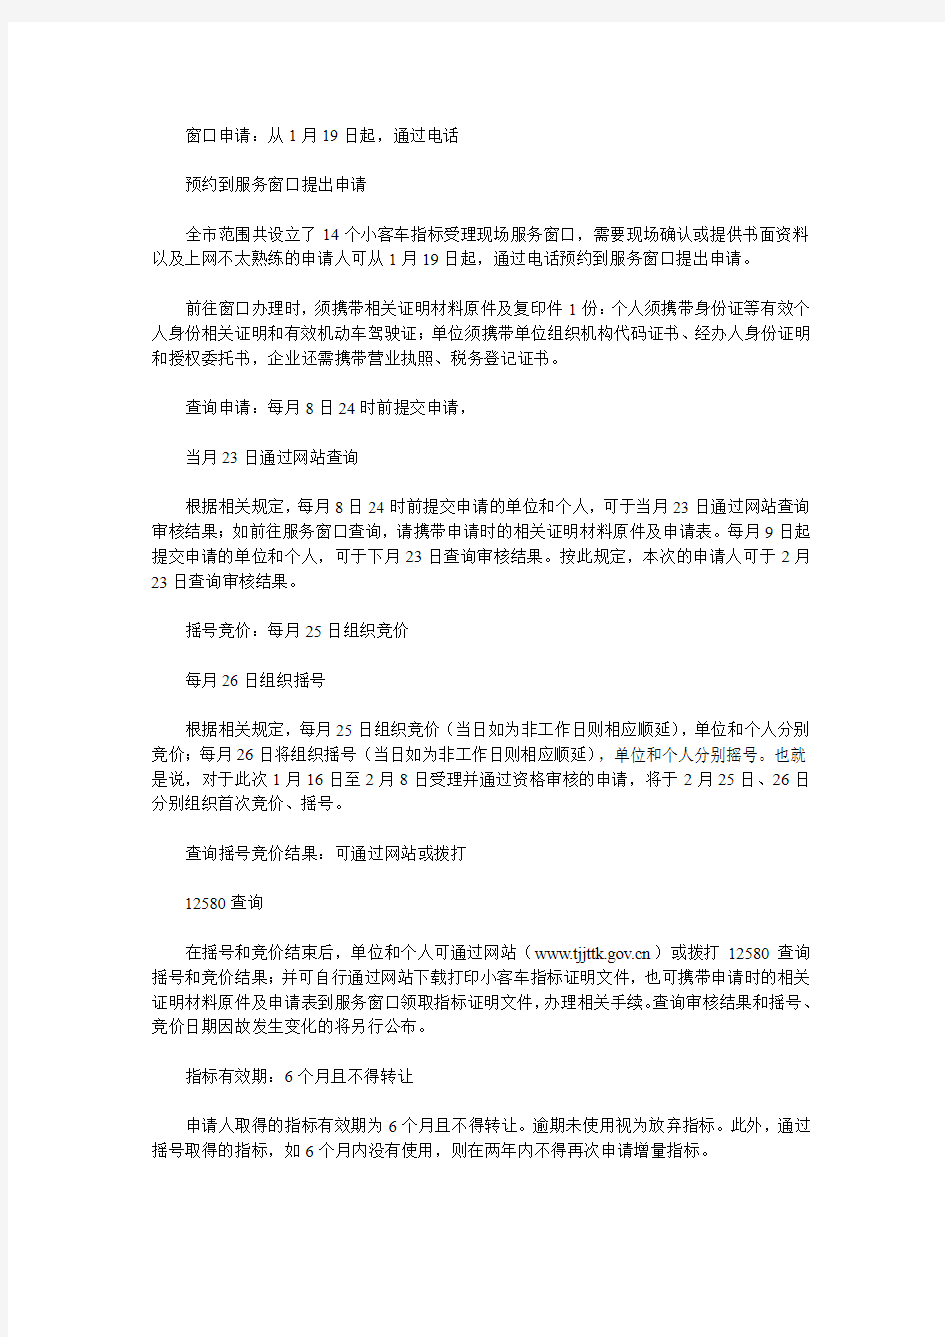 天津小客车指标申请明日零时起